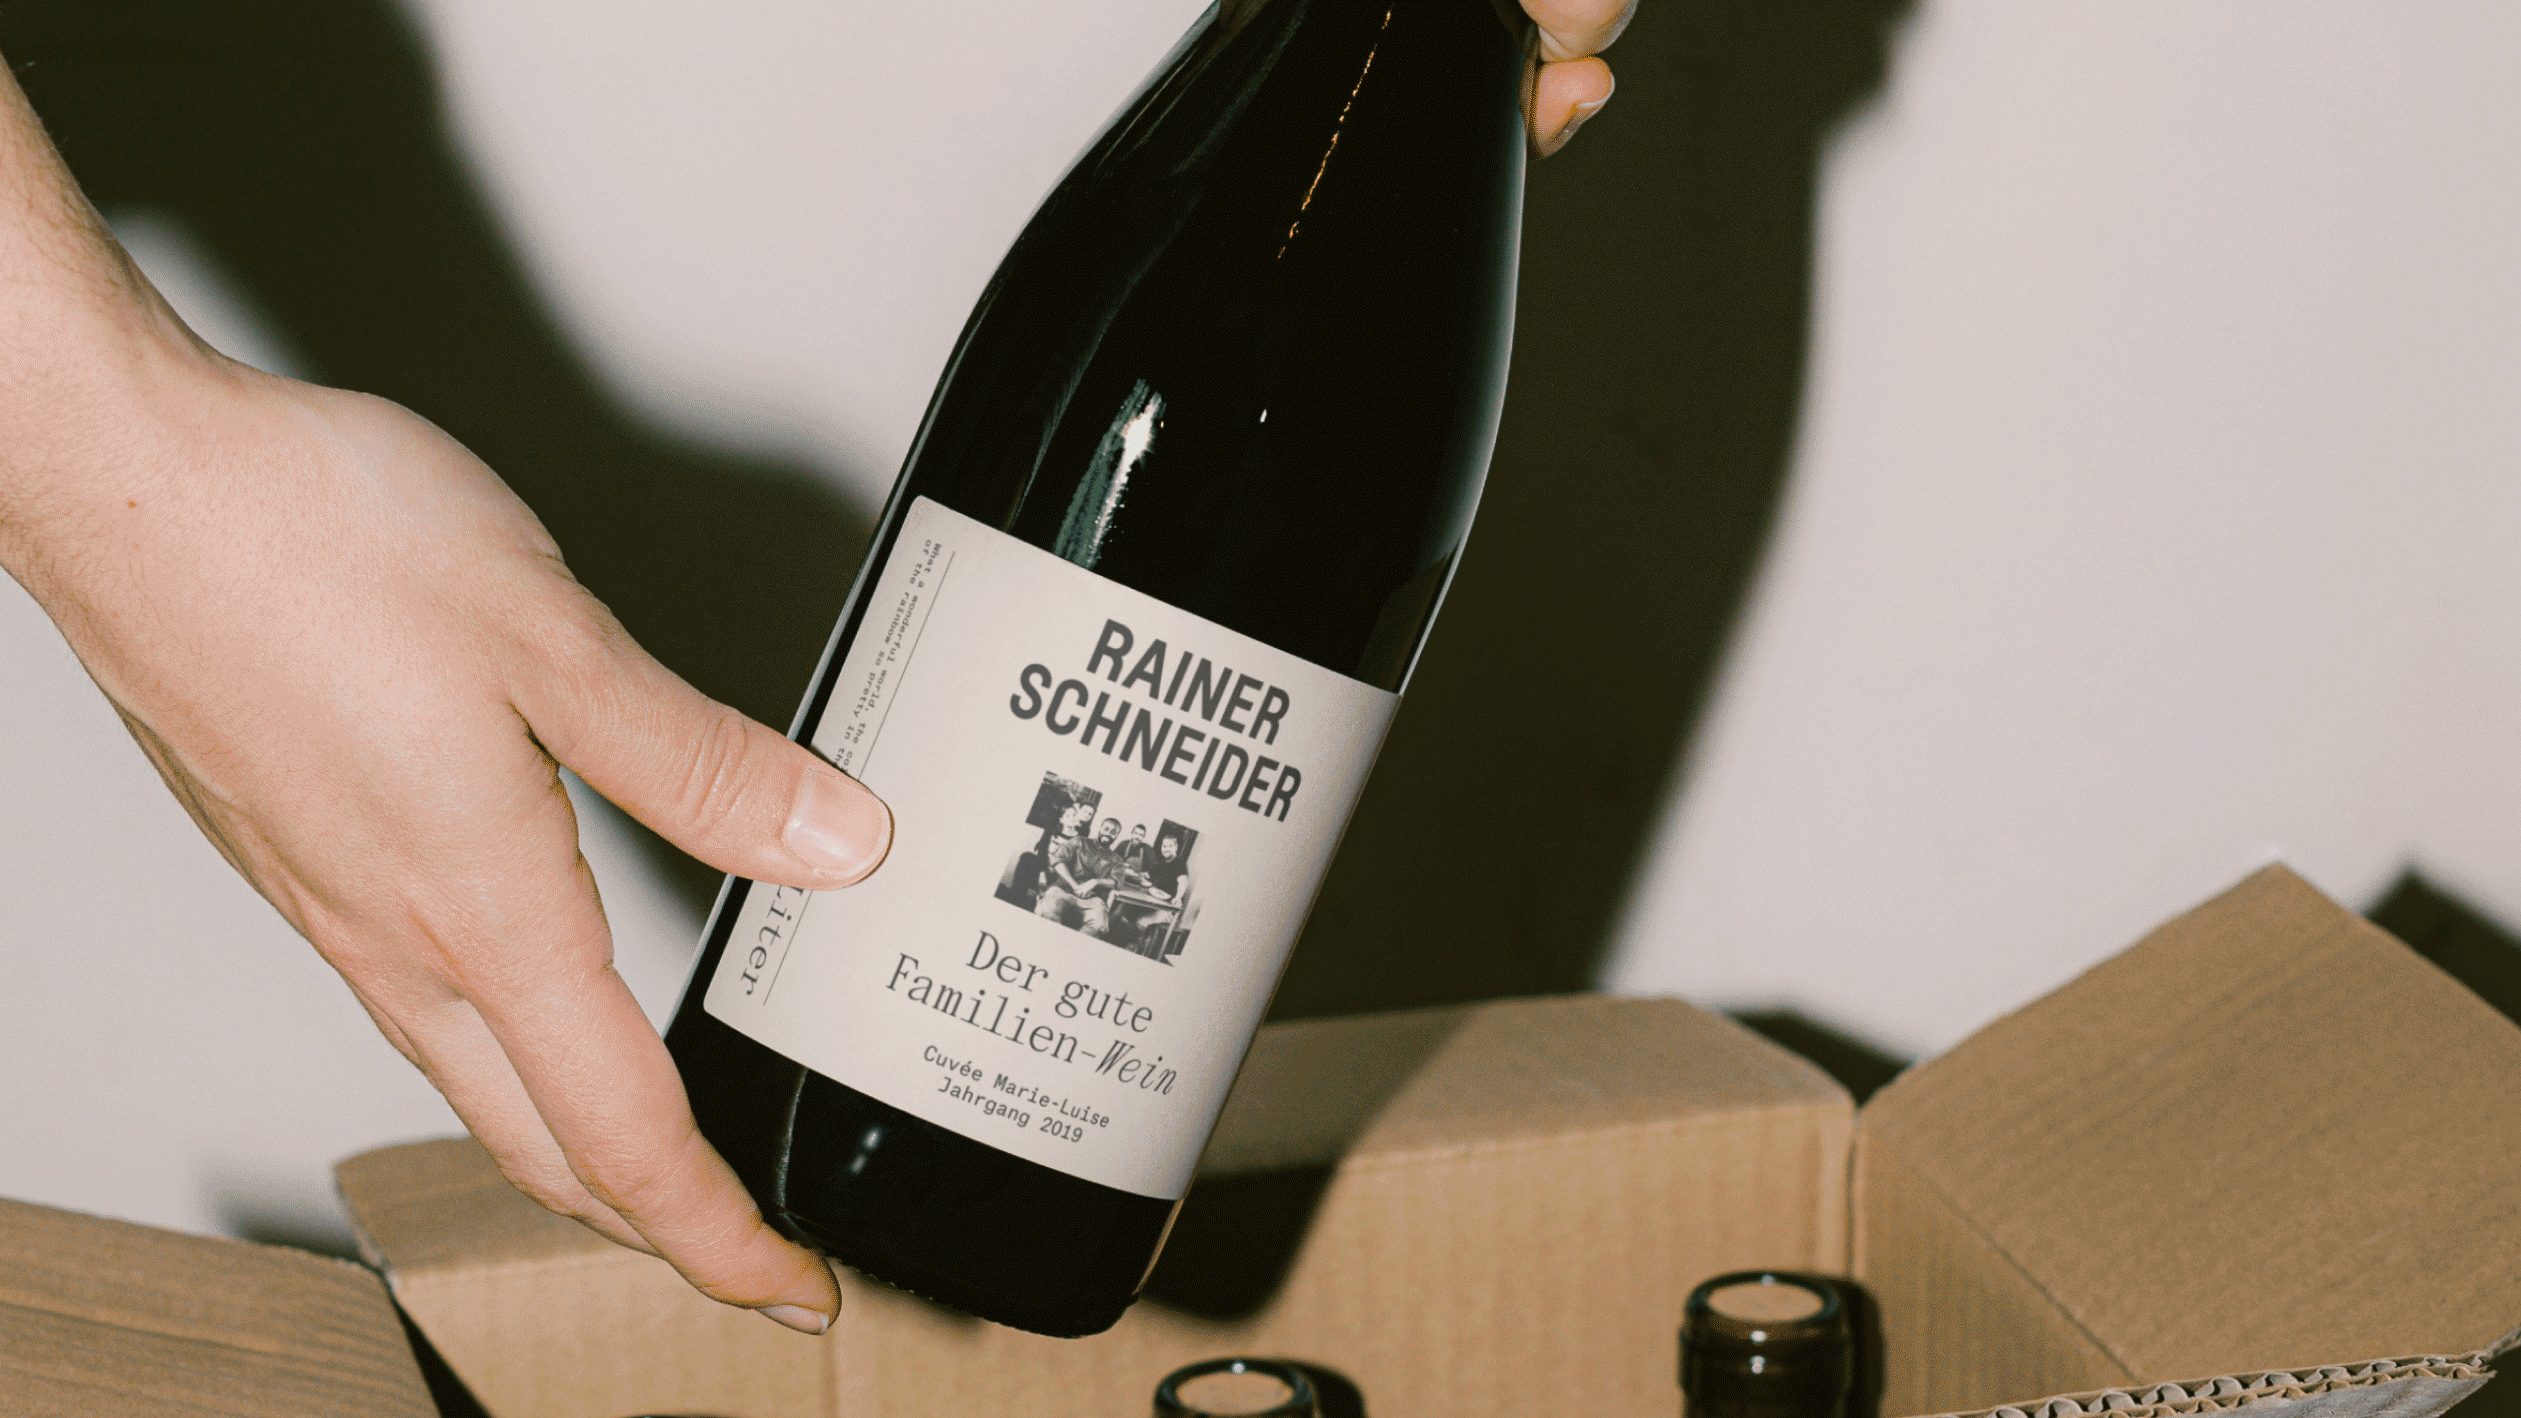 Rainer-Schneider-wine-bottle